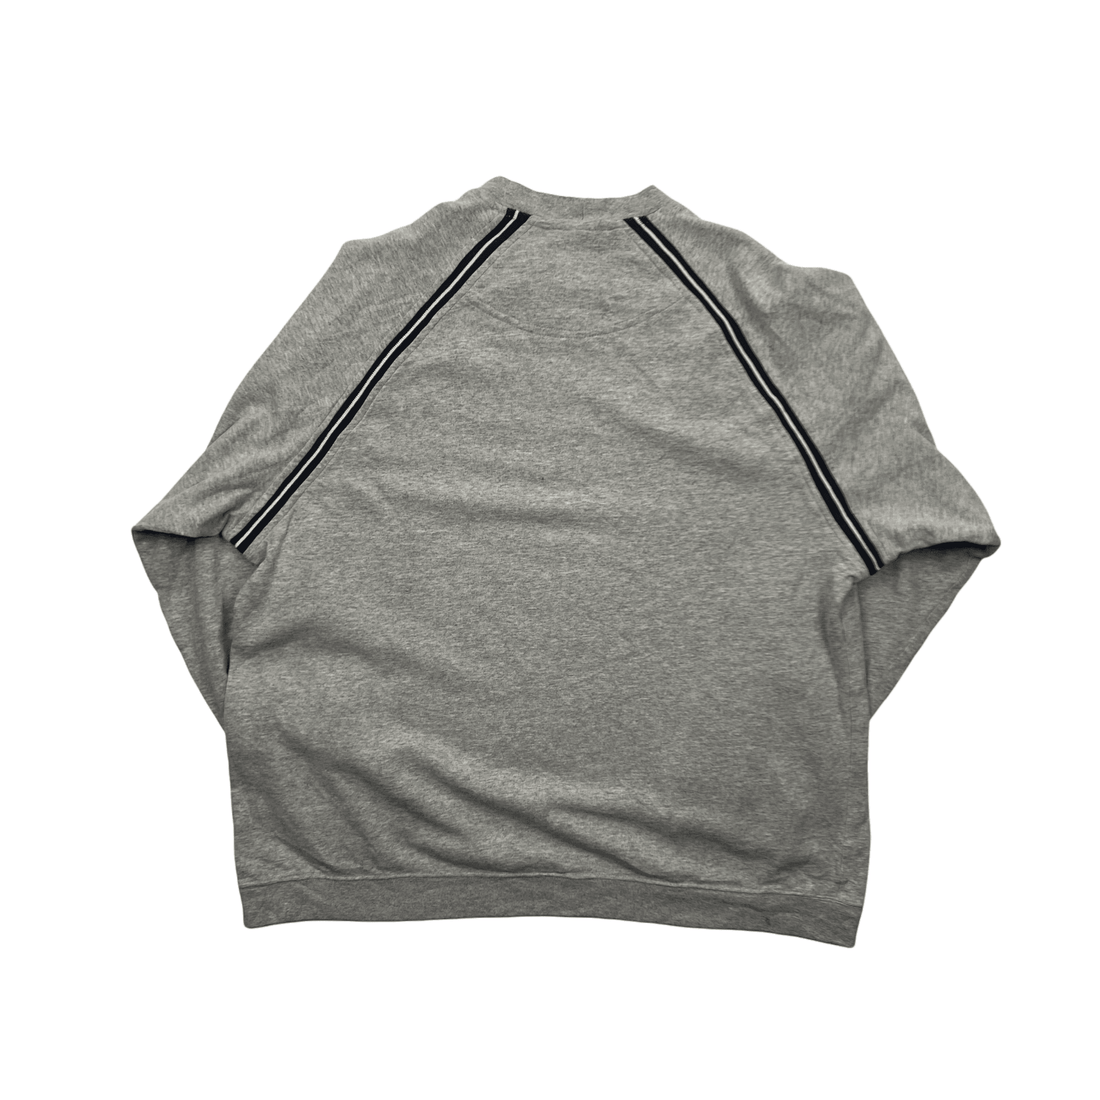 Vintage Grey + Black Nike Spell-Out Sweatshirt - Large - The Streetwear Studio